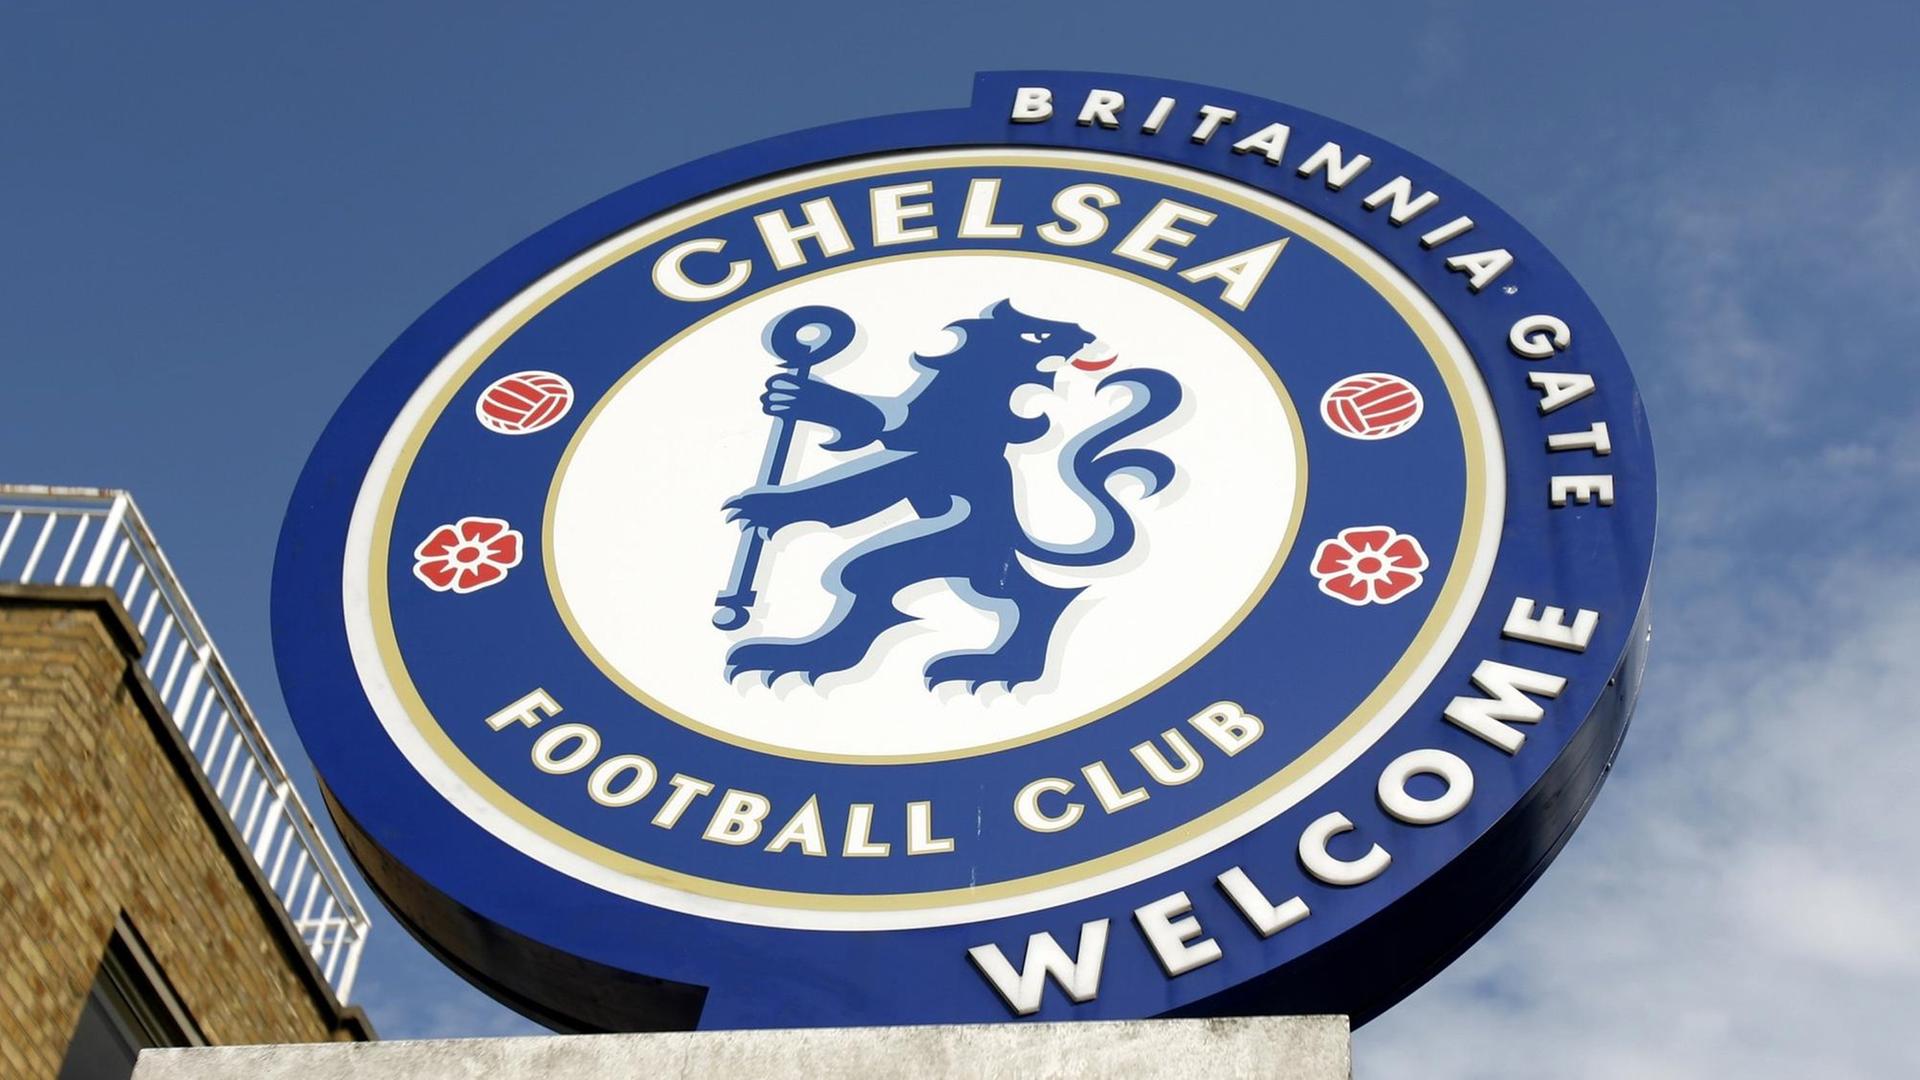 Klubemblem des englischen Fußballklubs FC Chelsea London vor dem Stadion an der Stamford Bridge